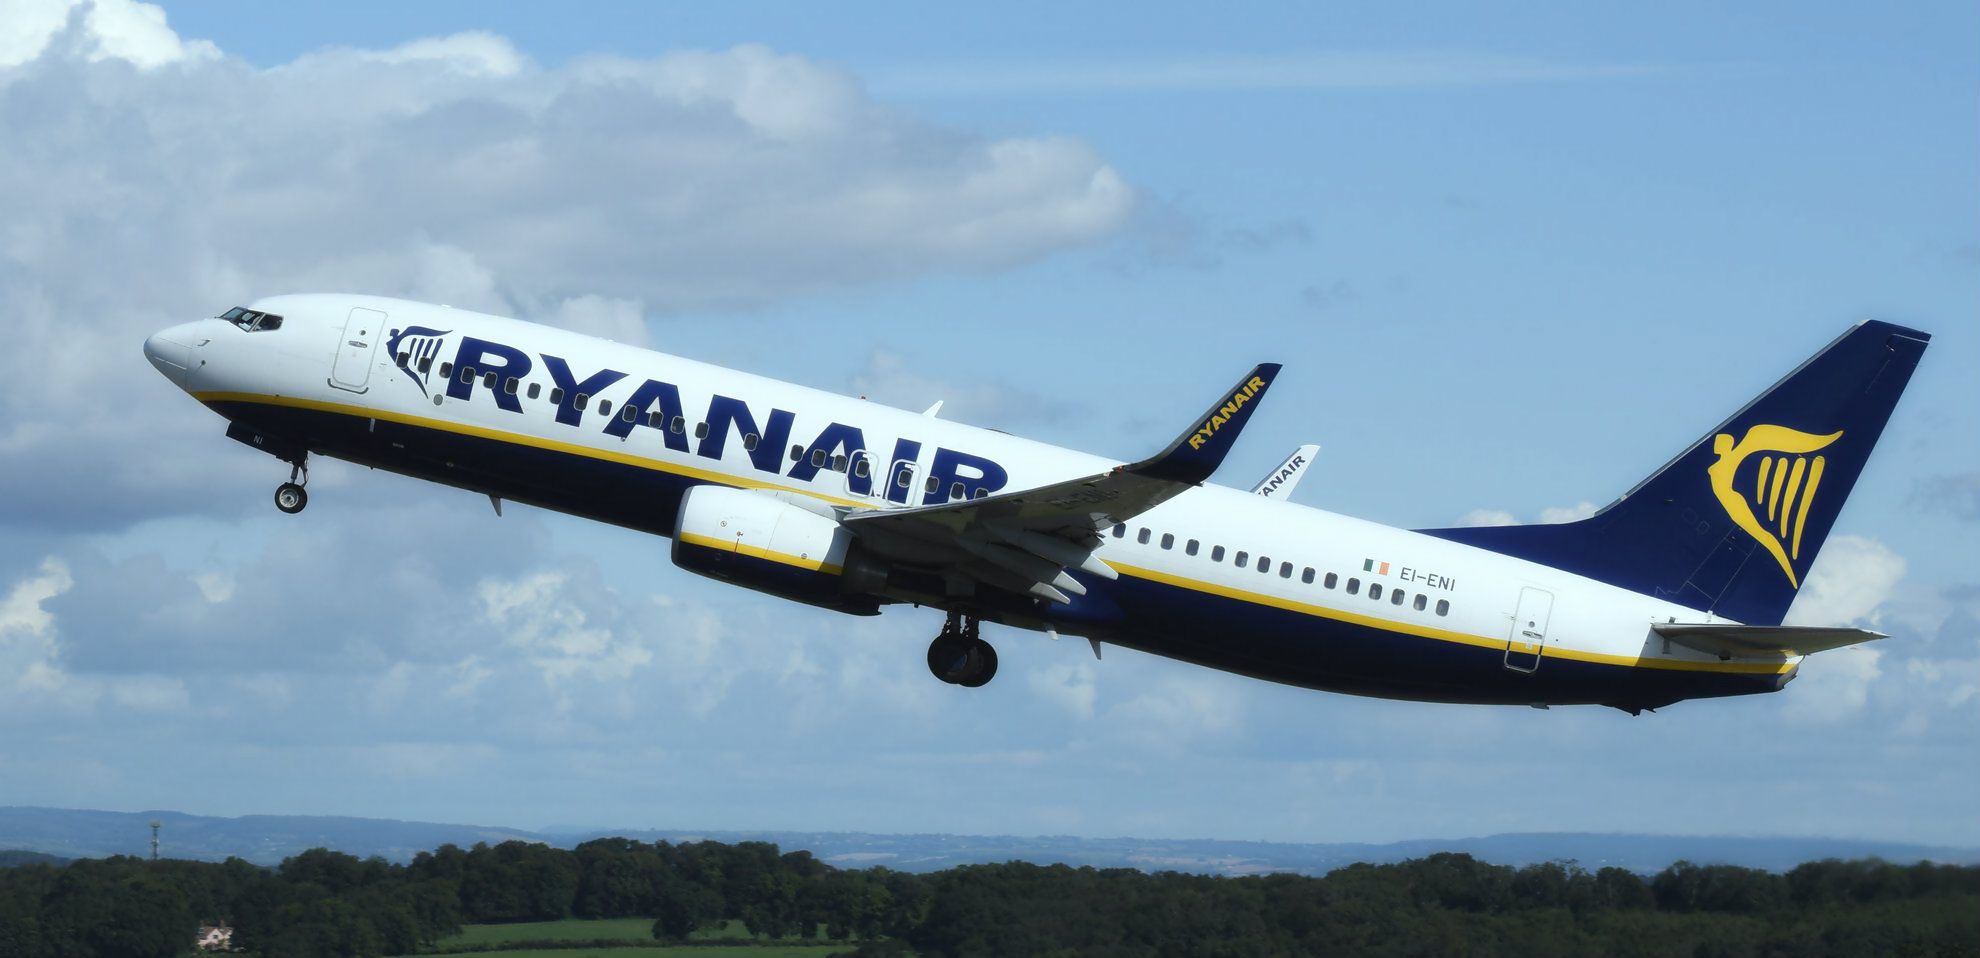 Ingyenes repülőjegyek bevezetését tervezi a Ryanair tulajdonosa, de van rossz hír is... 4